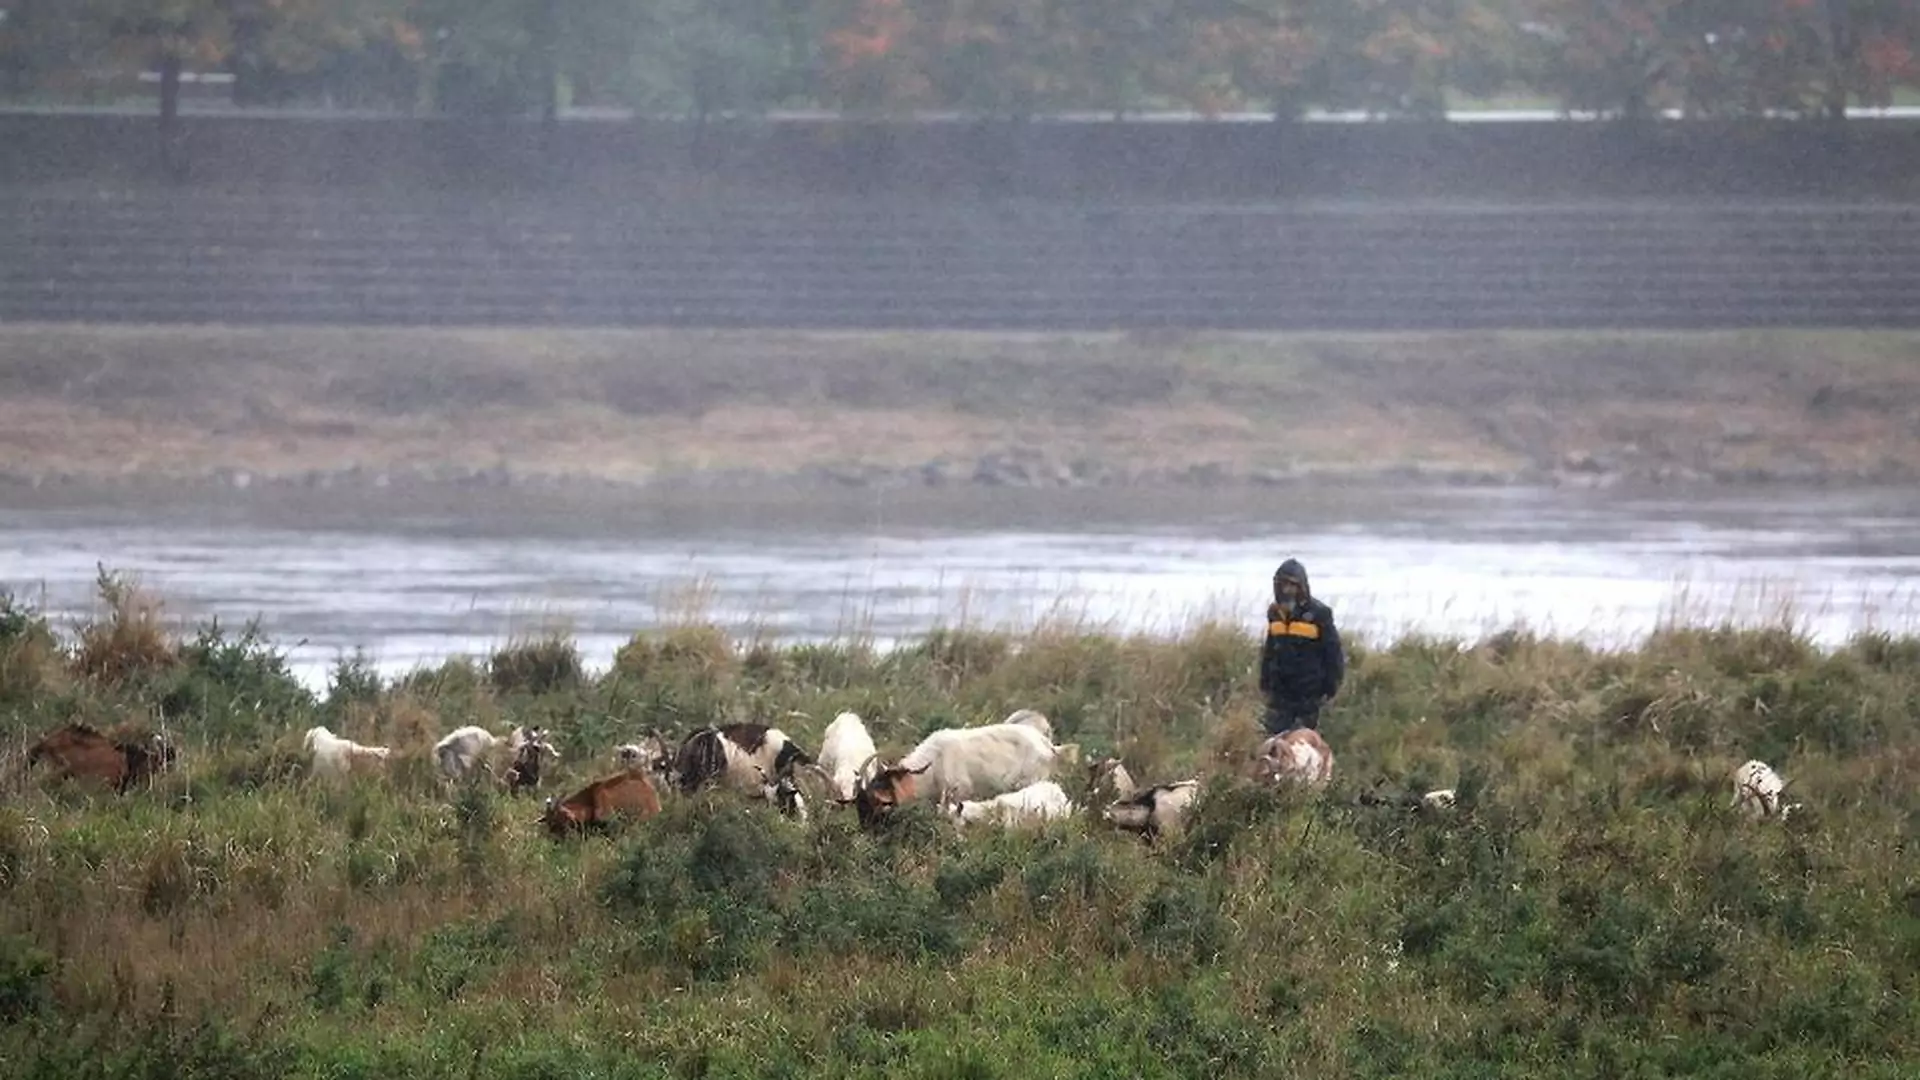 Martwe kozy nad Wisłą - stada pilnował bezdomny za parówki. "Ekologiczny projekt" Warszawy kosztował 100 tys.